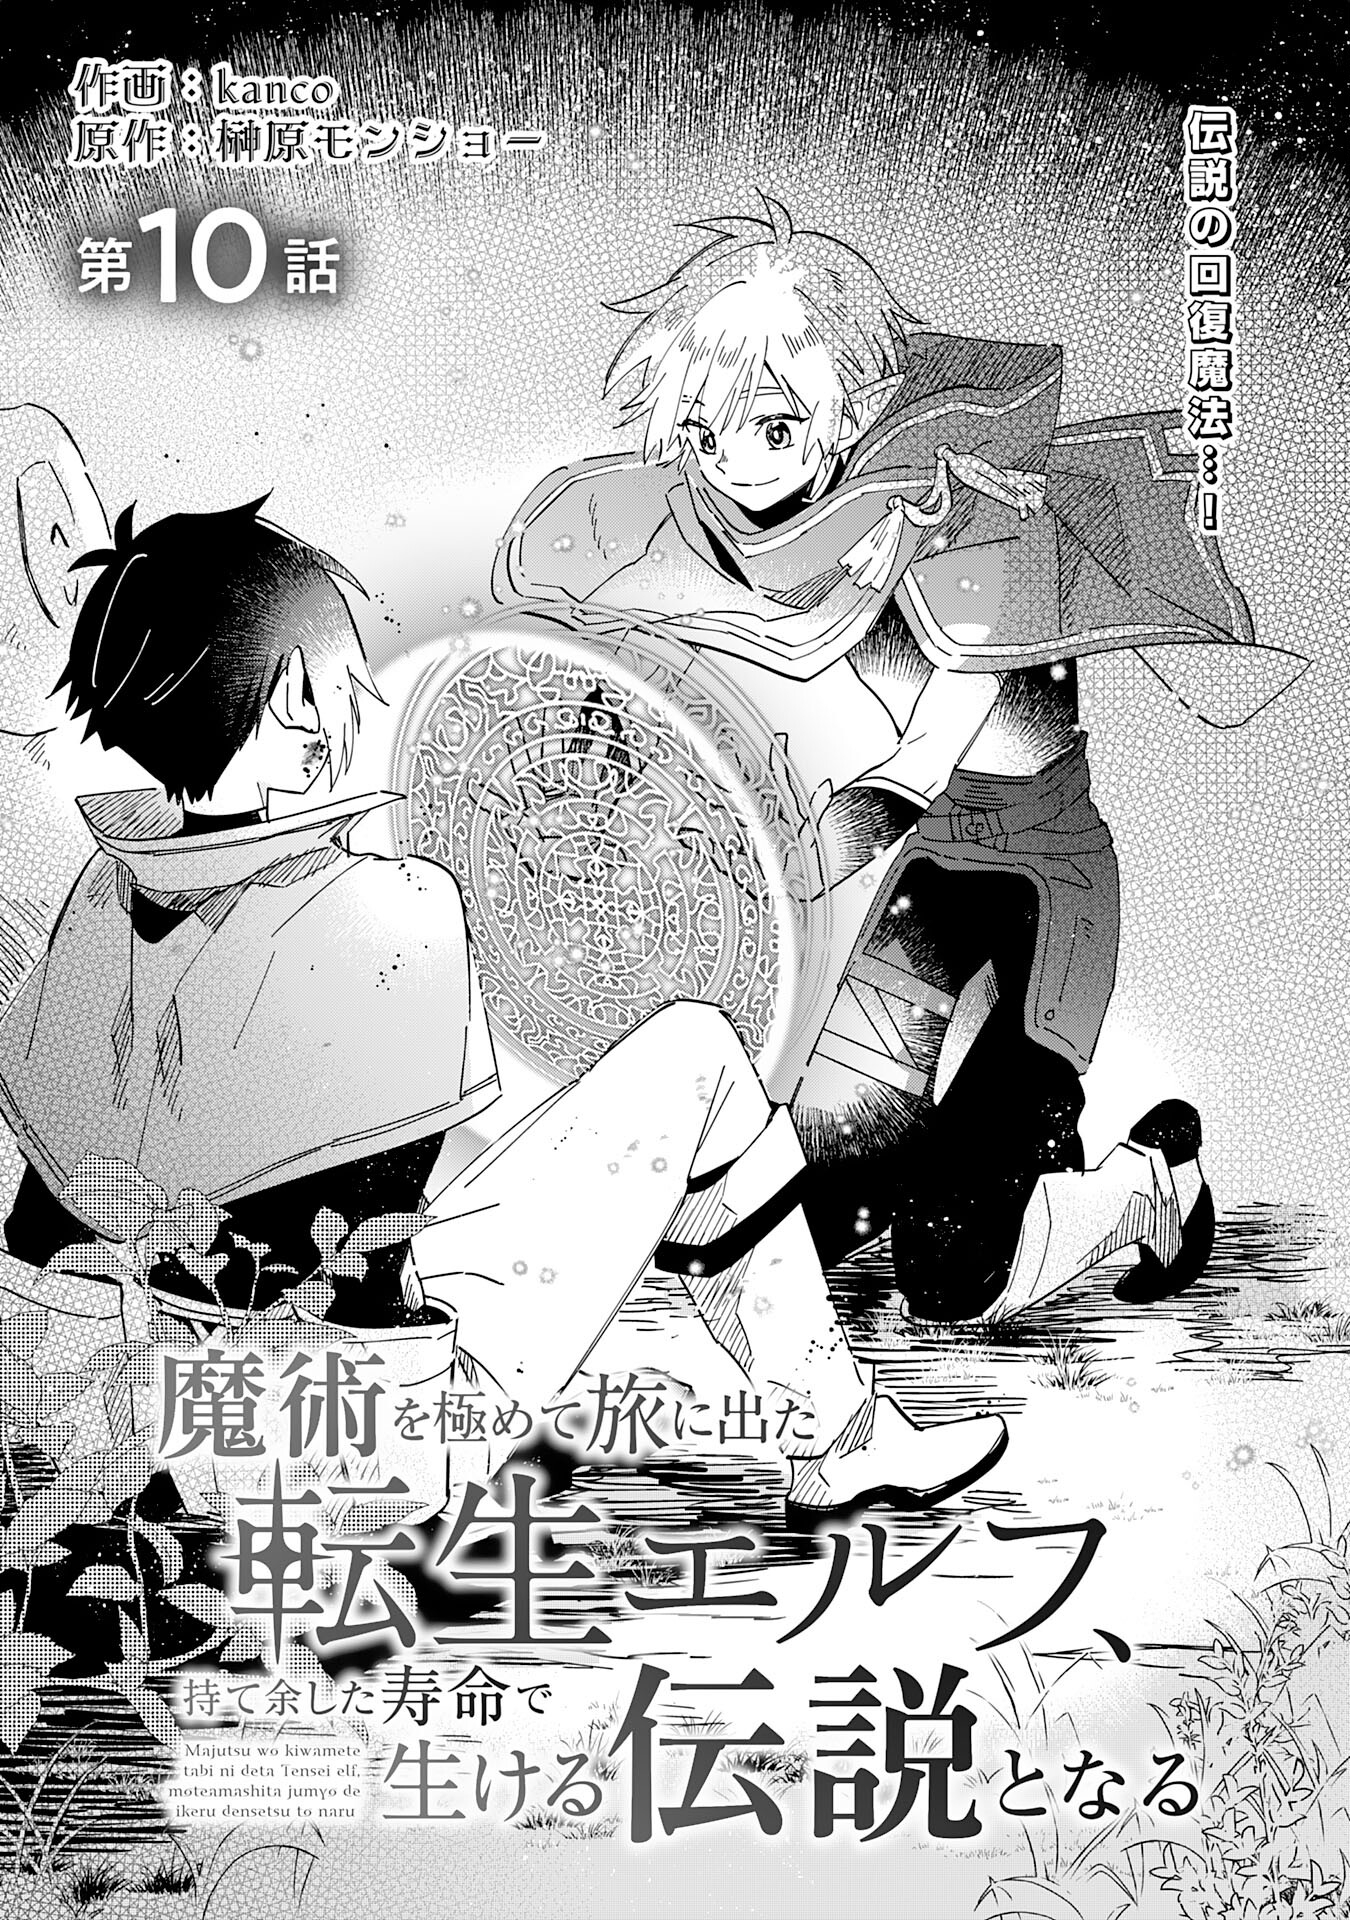 Majutsu wo Kiwamete Tabi ni Deta Tensei Elf, Moteamashita Jumyou de Ikeru Densetsu to naru - Chapter 10 - Page 1